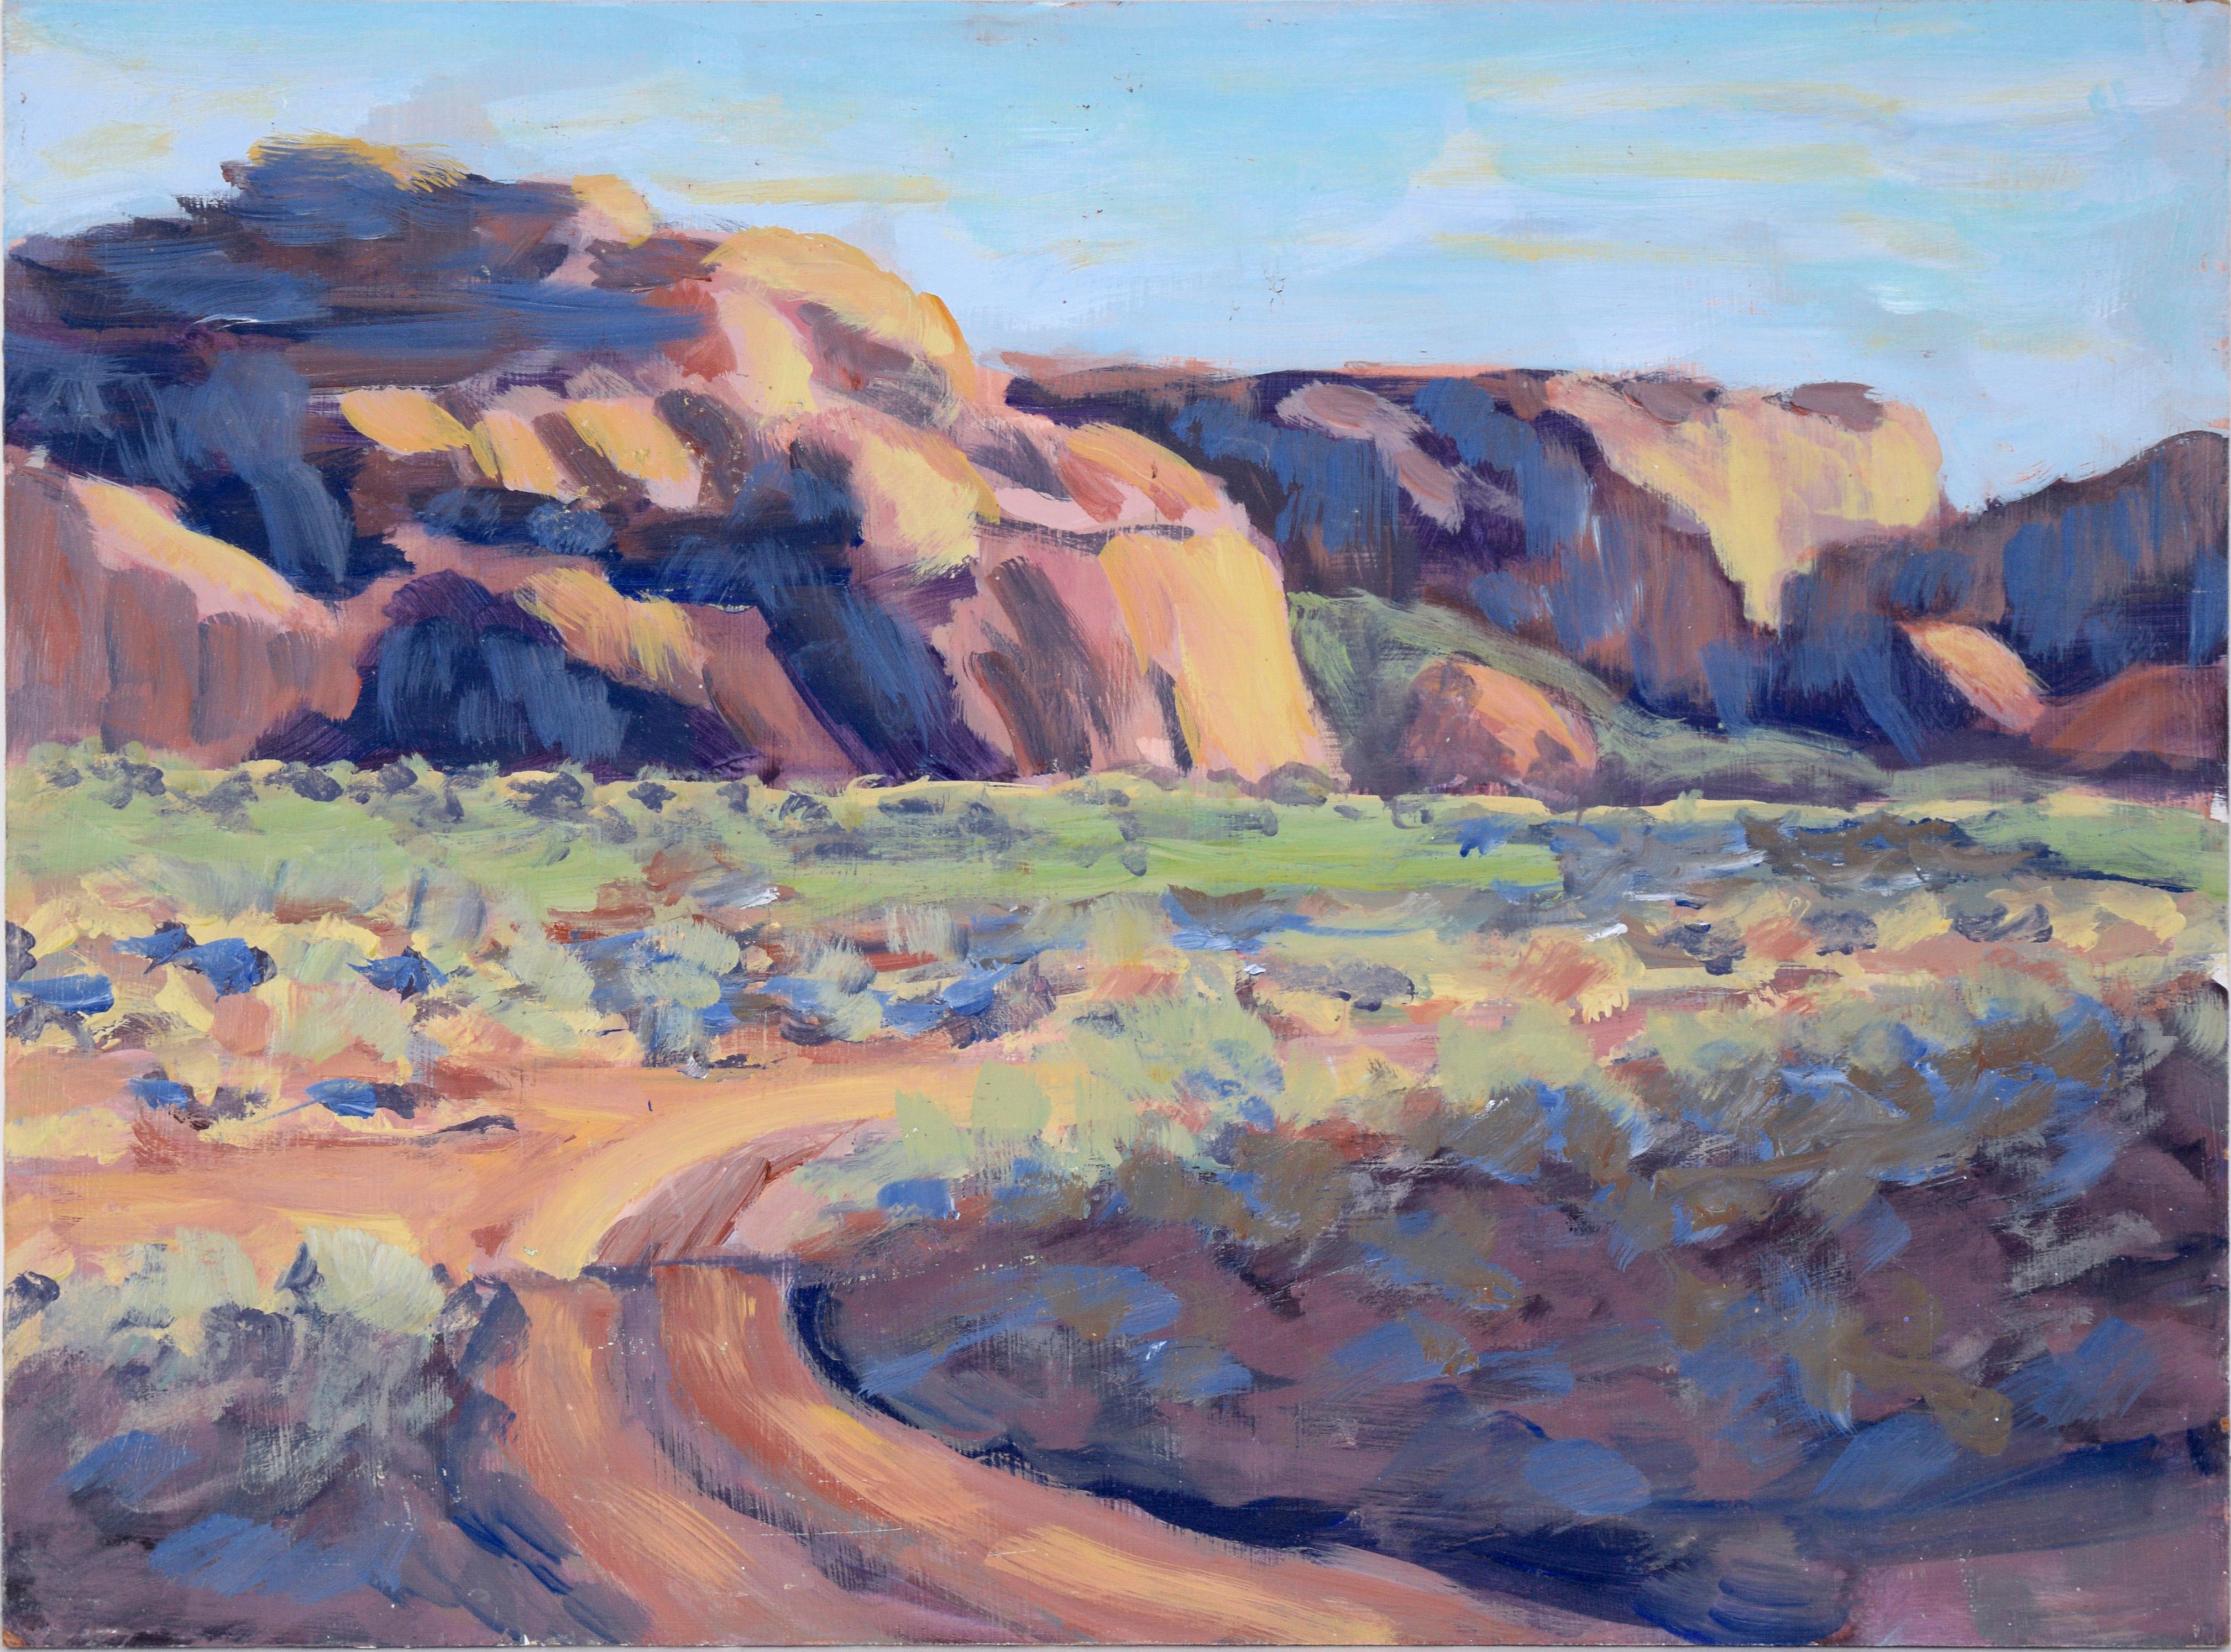 Landscape Painting Nick White - « Touring Monument Valley » - Paysage en plein air désert en acrylique sur masonite